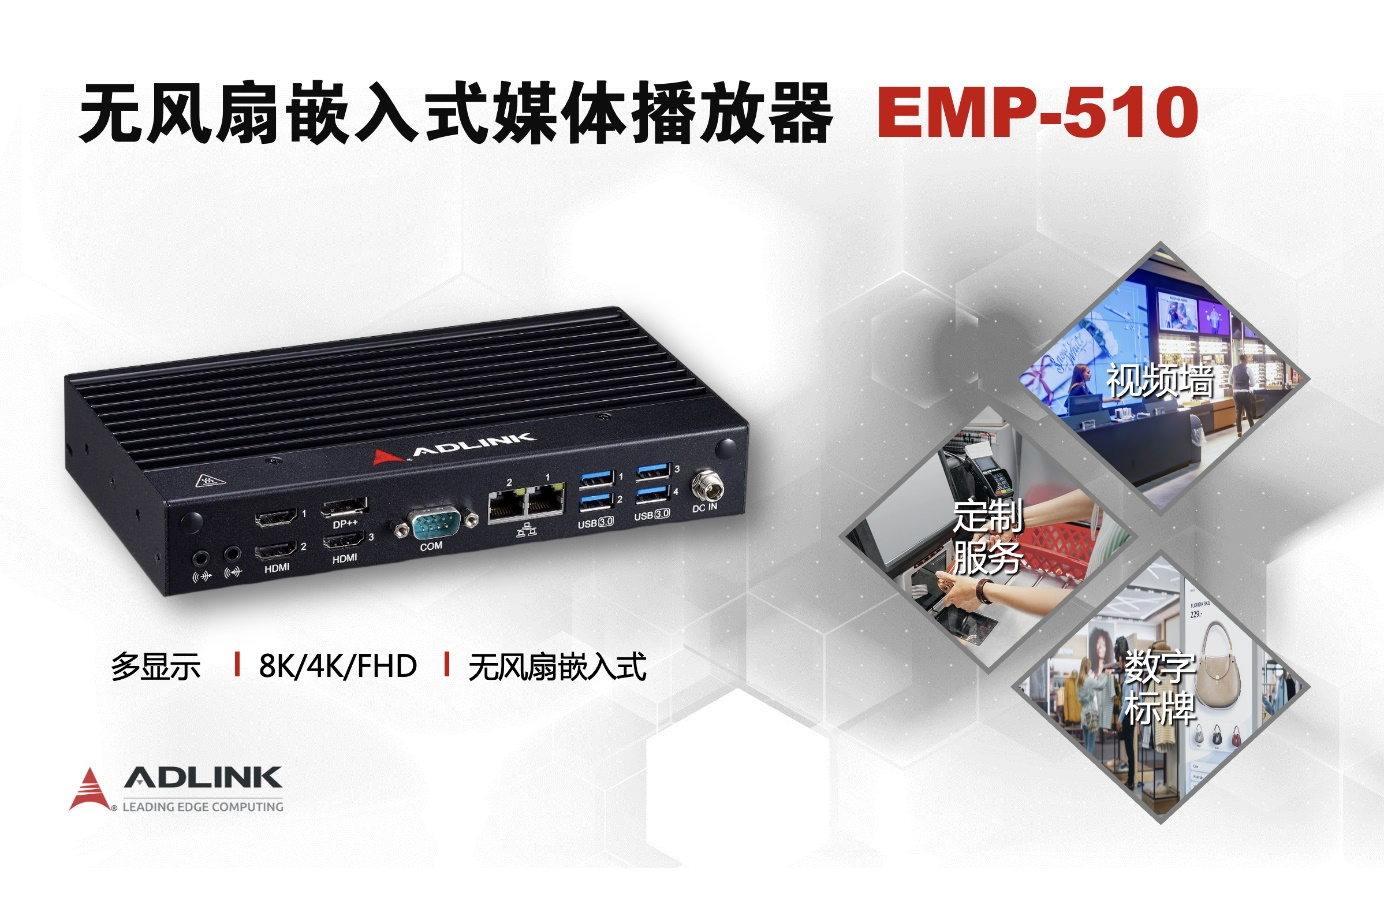 凌华科技推出全新的、基于Intel® 处理器的无风扇嵌入式媒体播放器 EMP-510